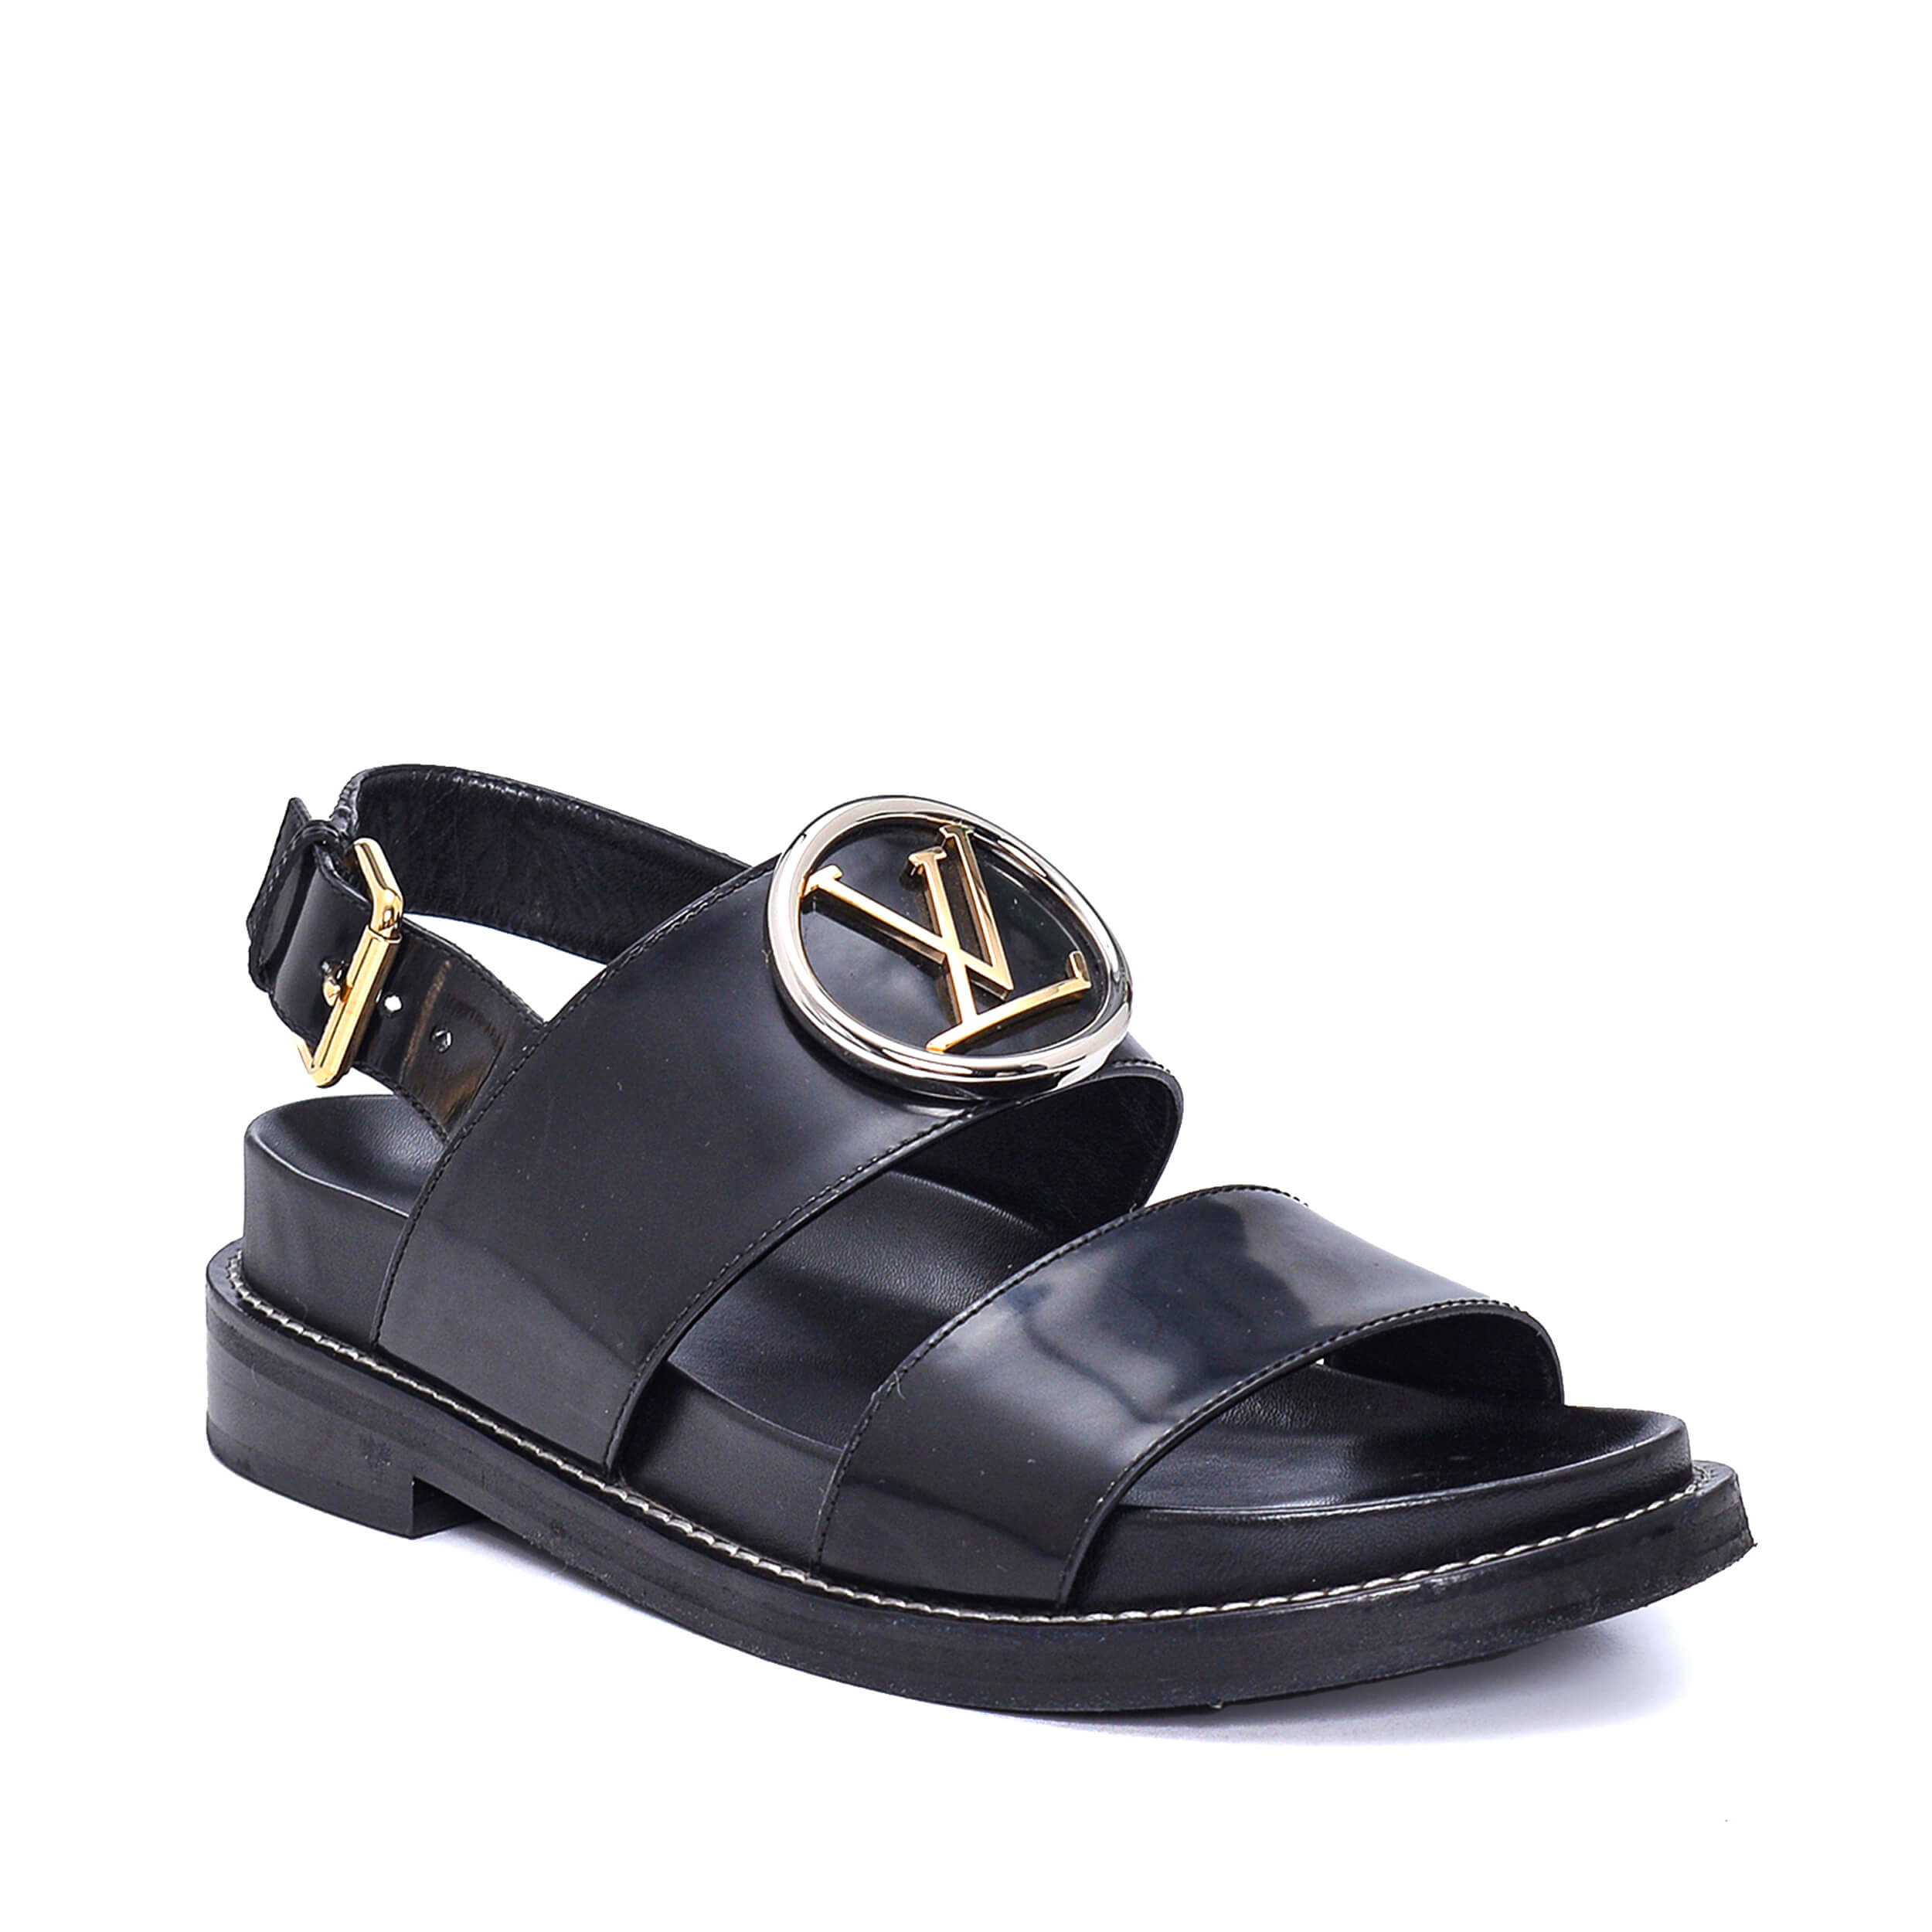 Louis Vuitton - Black Patent Leather LV Buckle Detail Sandals